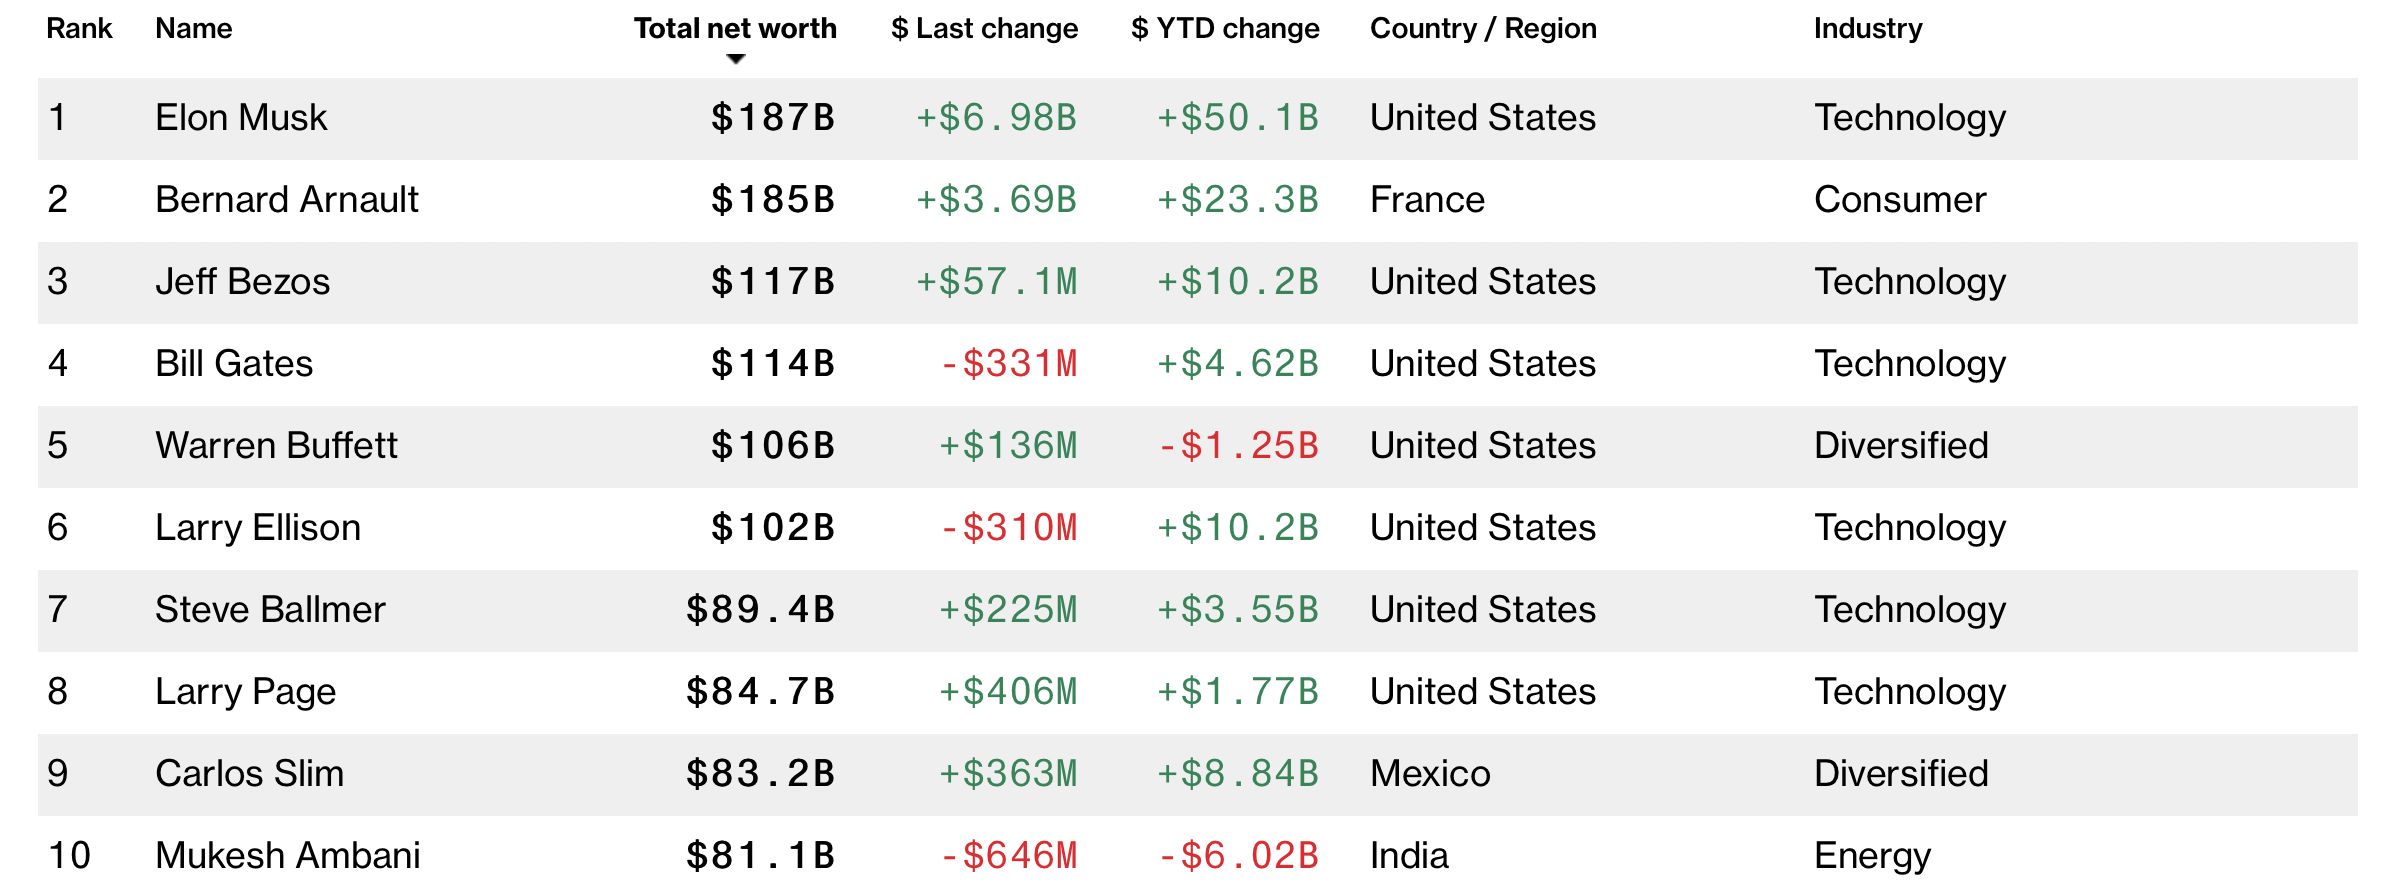 Tỉ phú Elon Musk trở lại vị trí người giàu nhất thế giới. Ảnh: Bloomberg Billionaire Index